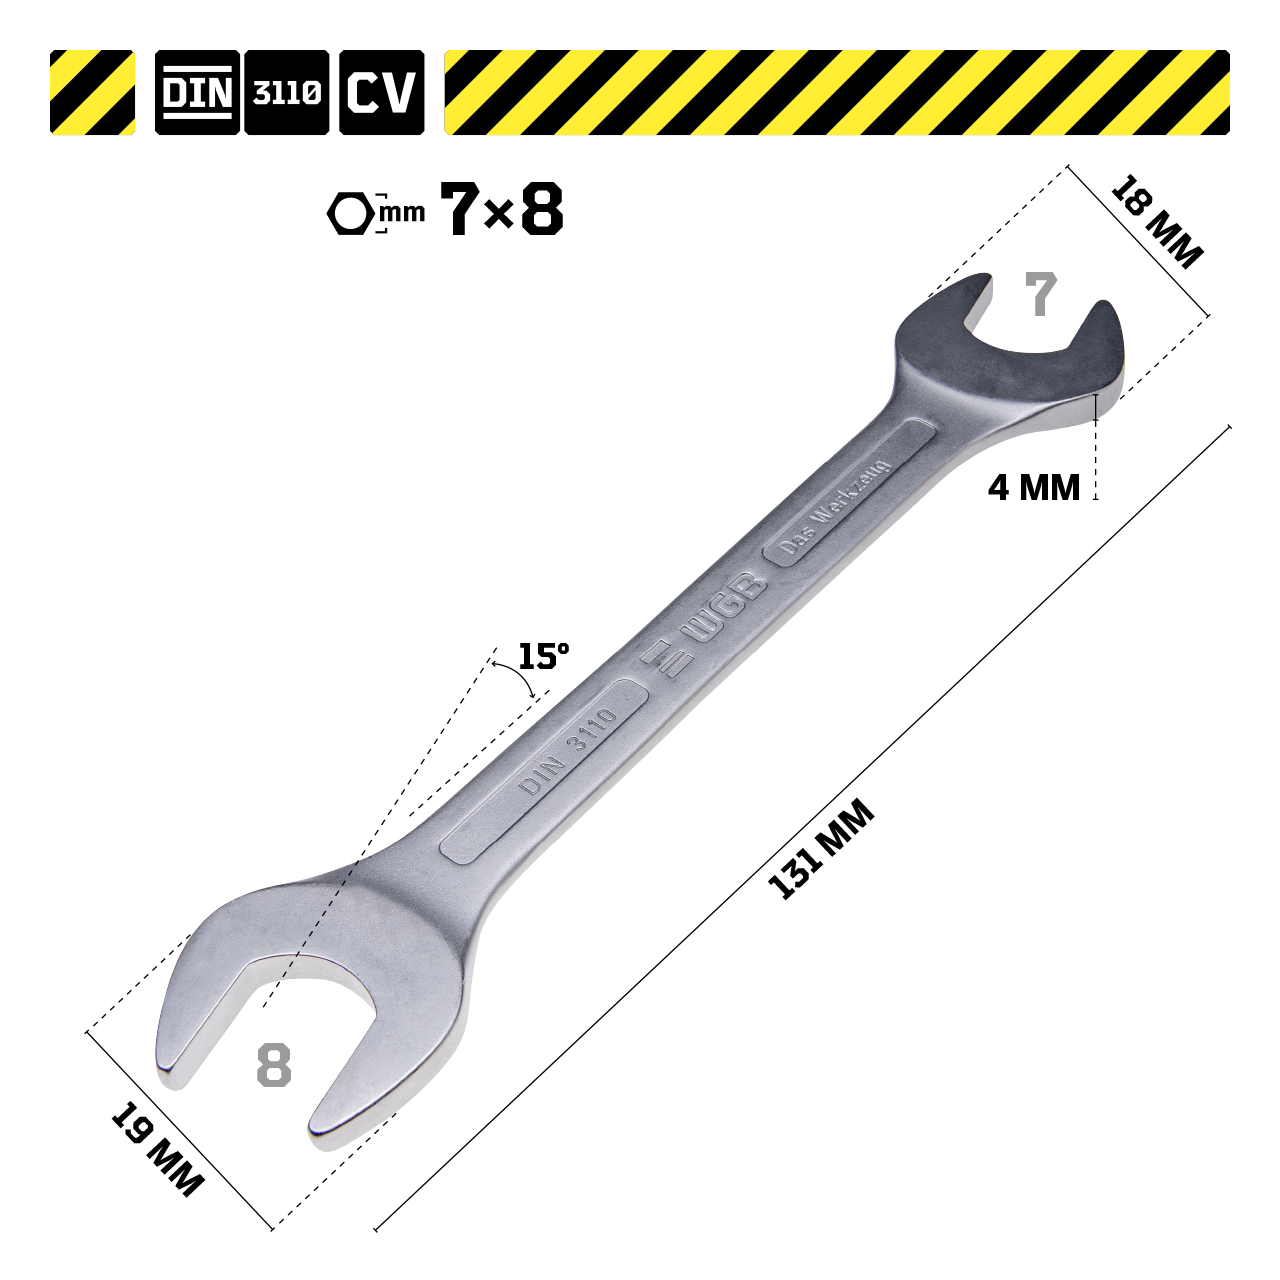 Produkte Doppelmaulschlüssel, Werkzeug - WGB Schraubenschlüssel > > 3110 | The DIN